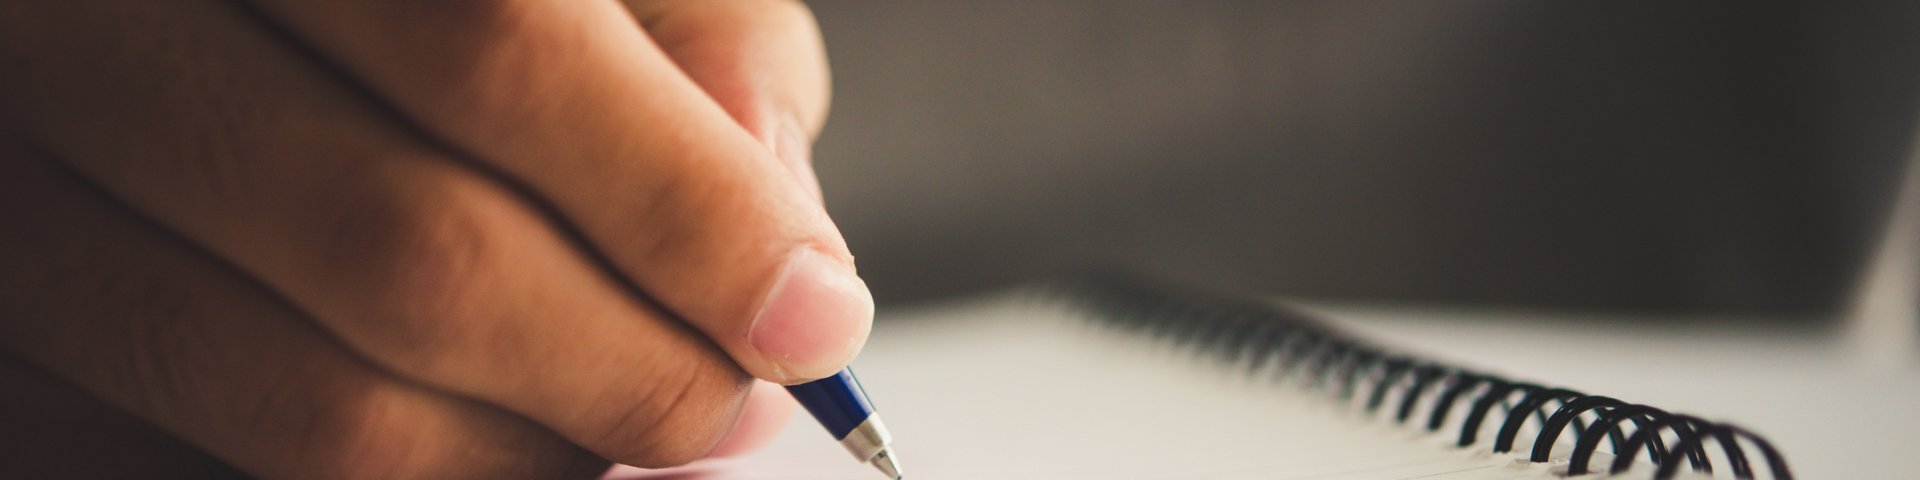 Käsi kirjutab pastakaga märkmikusse